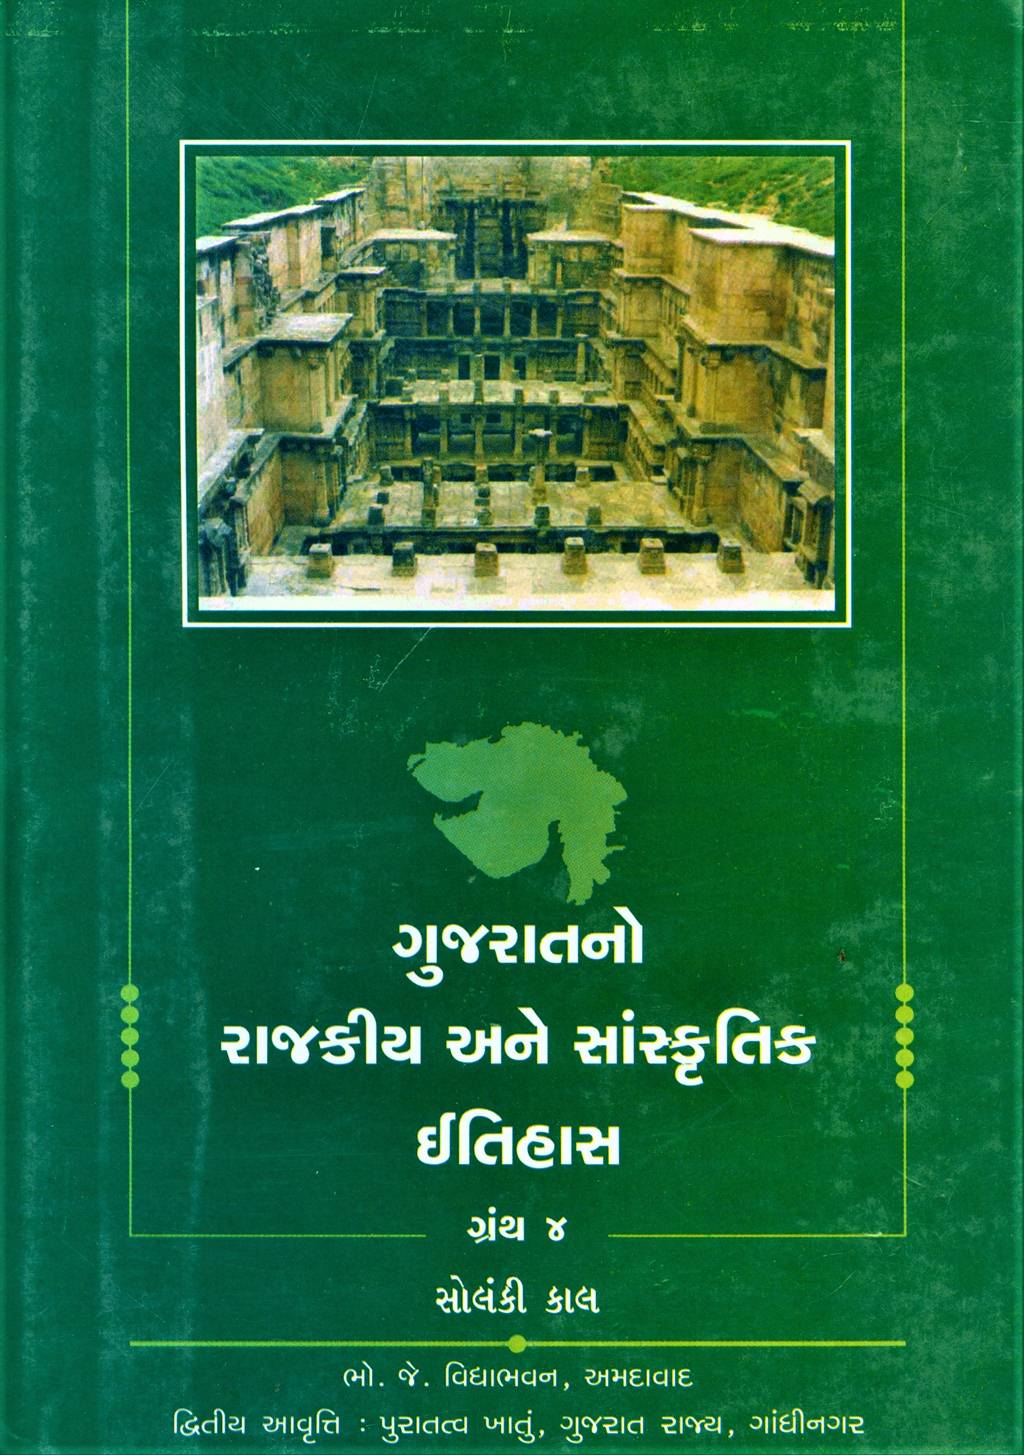 Gujaratno Rajkiya Ane Sanskritik Itihaas Granth 4 (ગુજરાતનો રાજકીય અને સાંસ્કૃતિક ઇતિહાસ ગ્રંથ ૪)